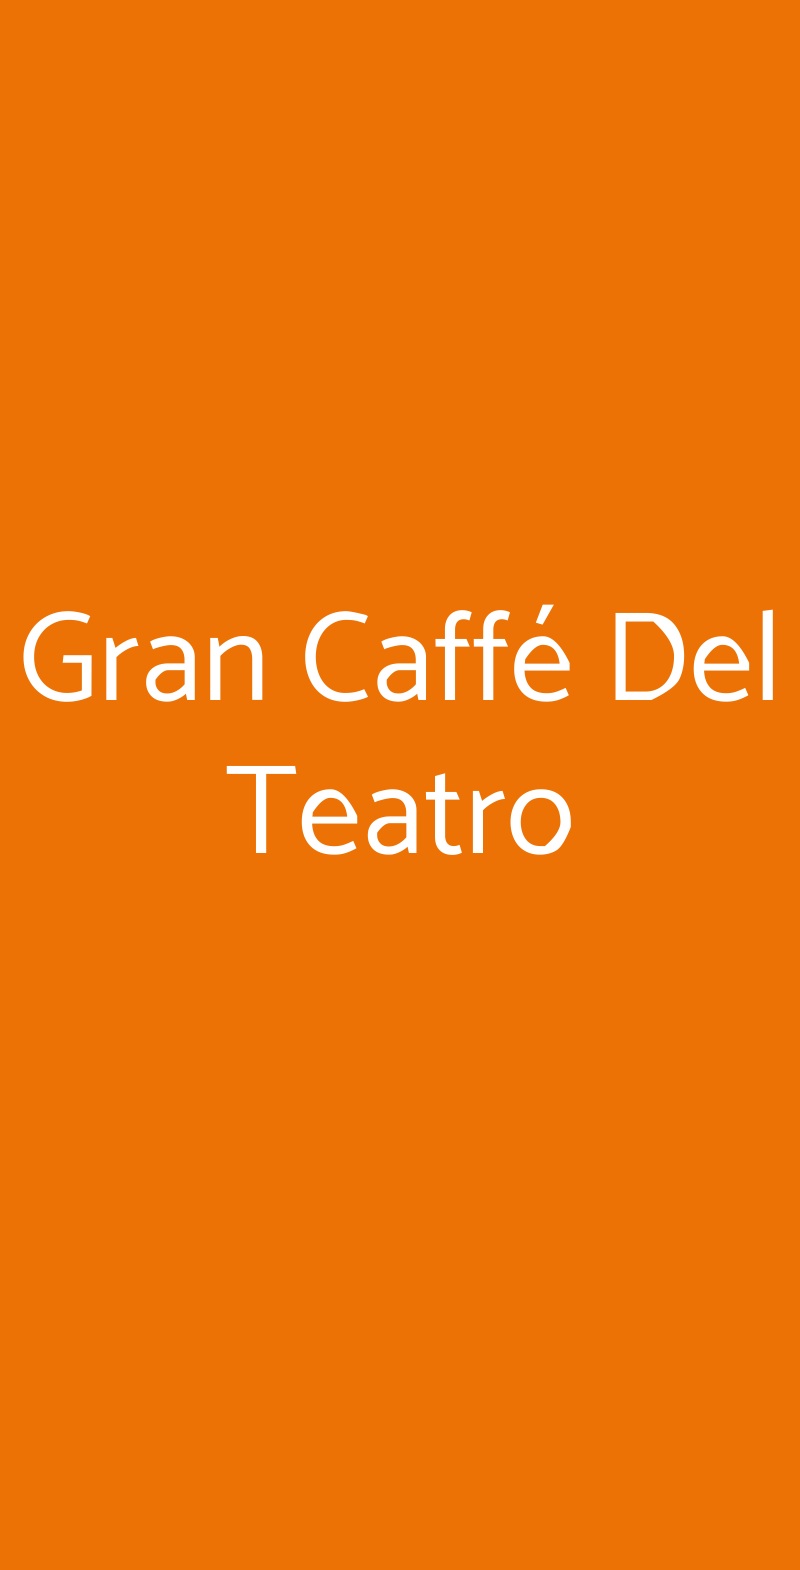 Gran Caffé Del Teatro Parma menù 1 pagina